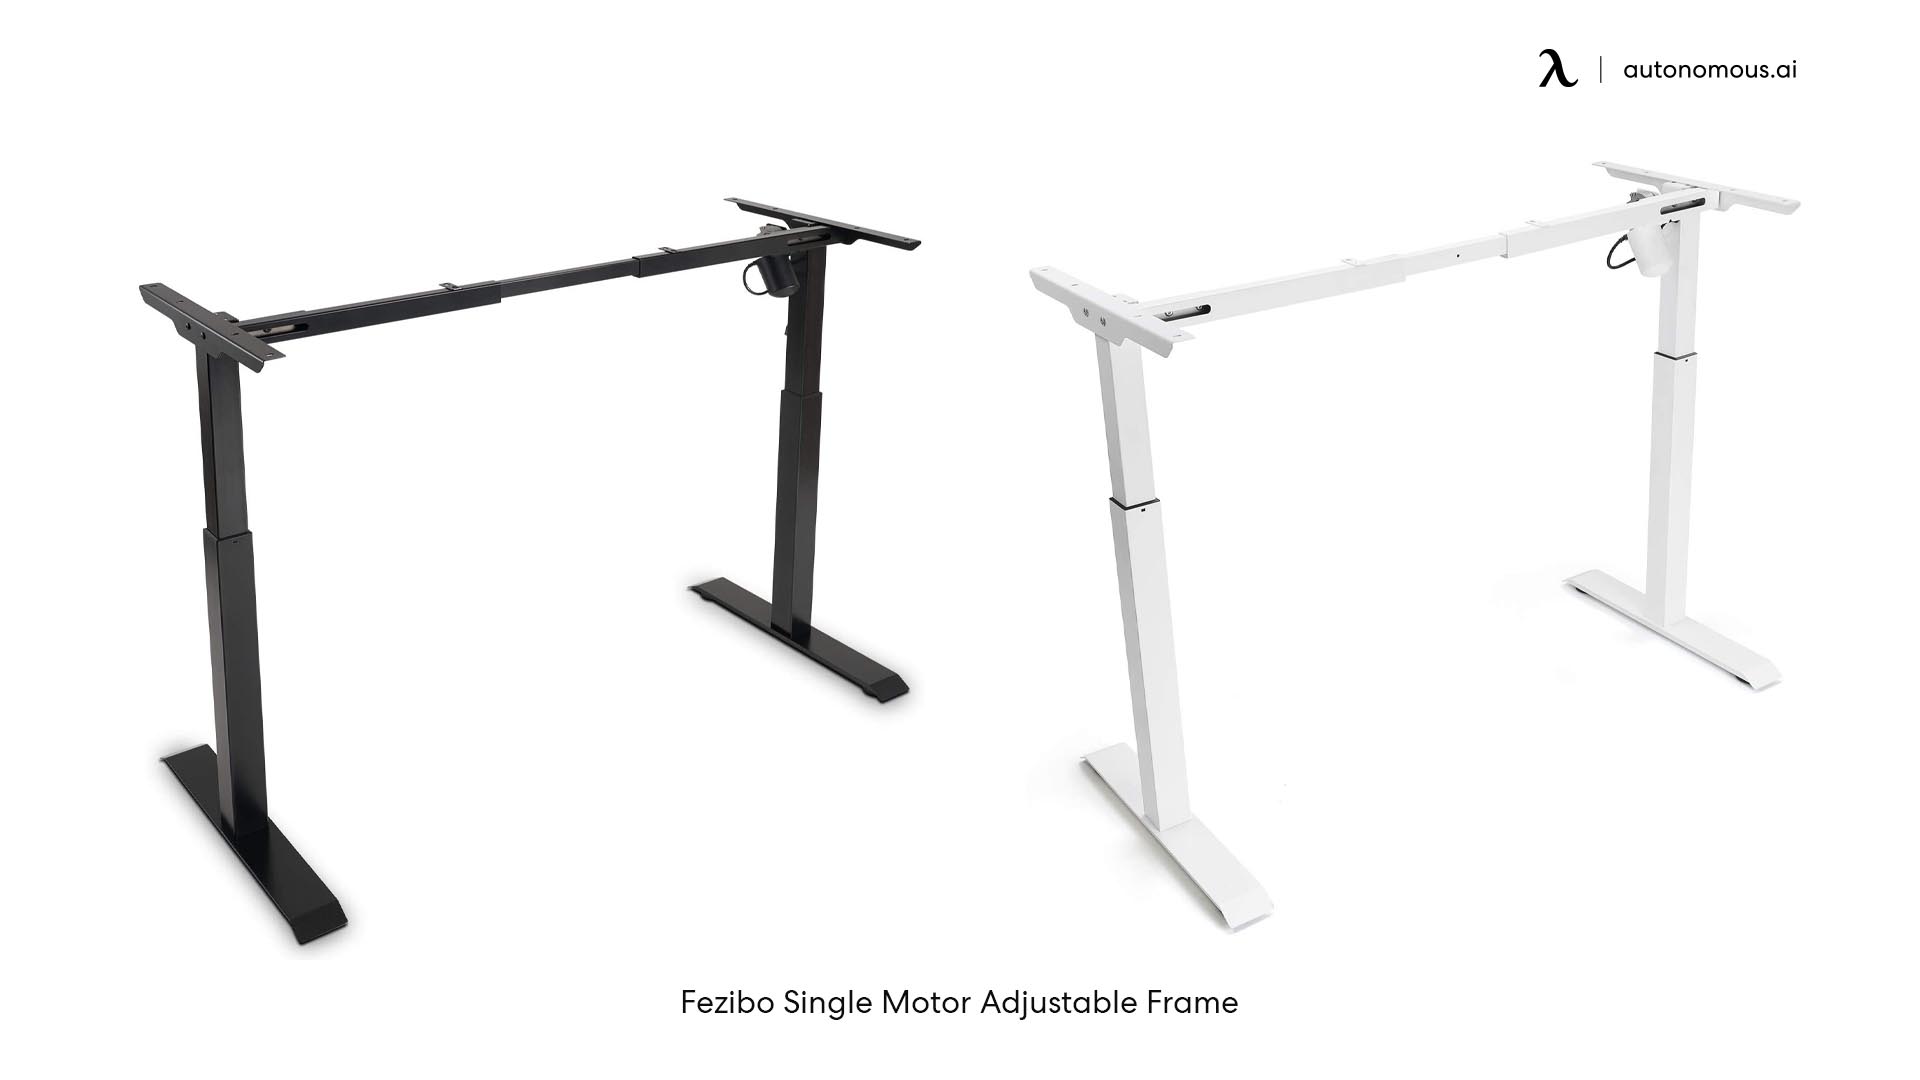 Fezibo Single Motor Adjustable Frame